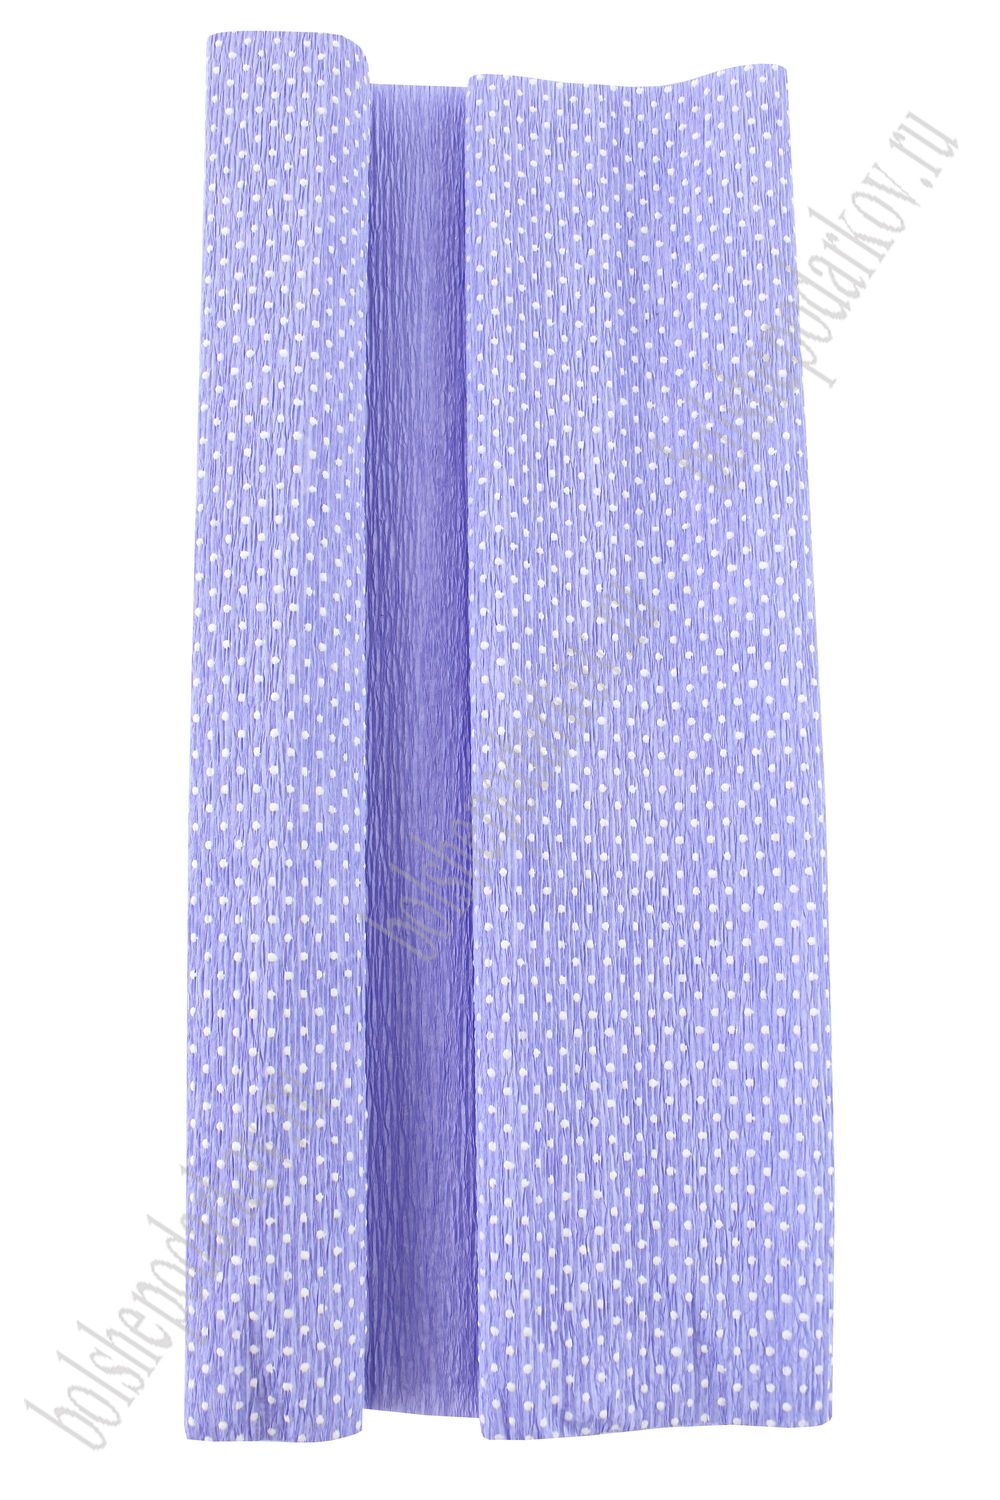 Бумага гофрированная 50 см*2,5 м "Горошек" N68-32, фиолетовый